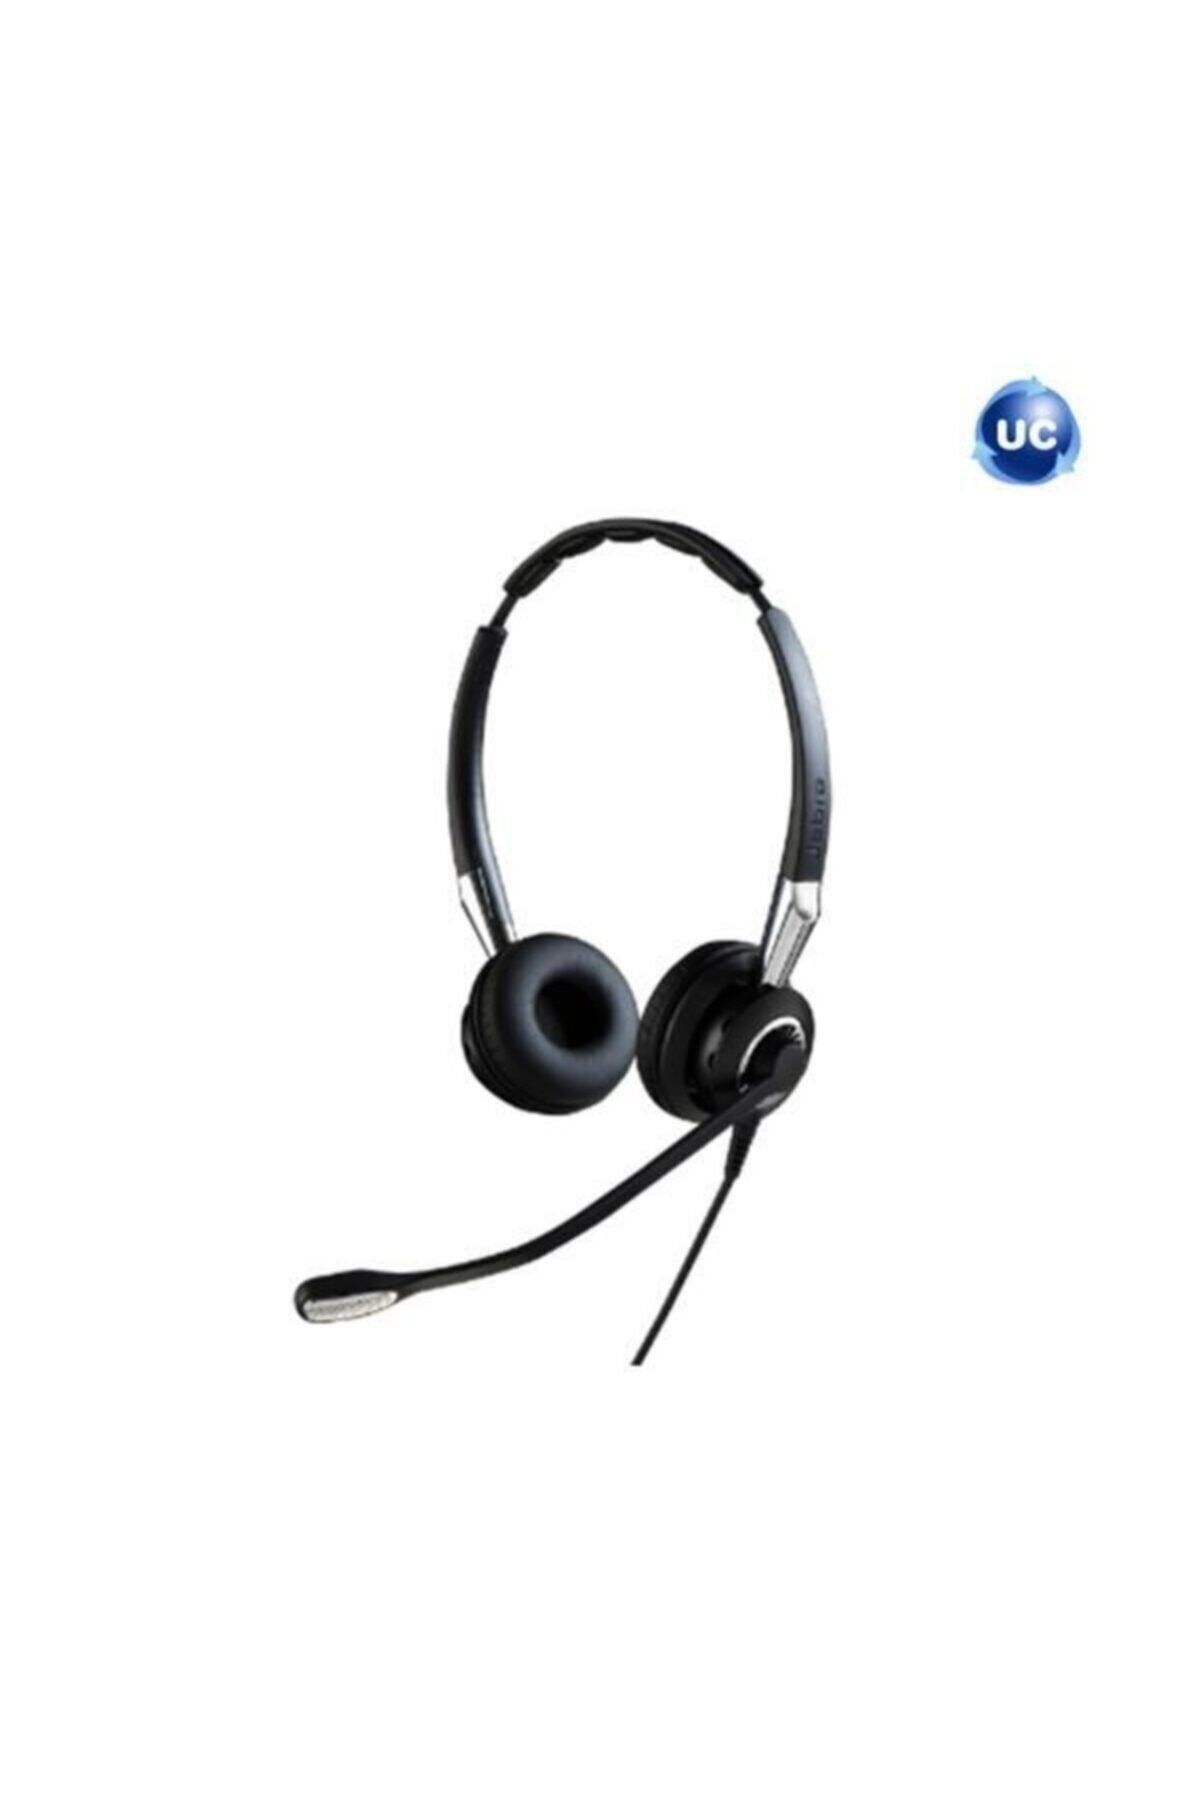 Jabra Bız 2400 Iı Uyumlu Qd Duo Ms Mikrofonlu Kulak Üstü Kulaklık